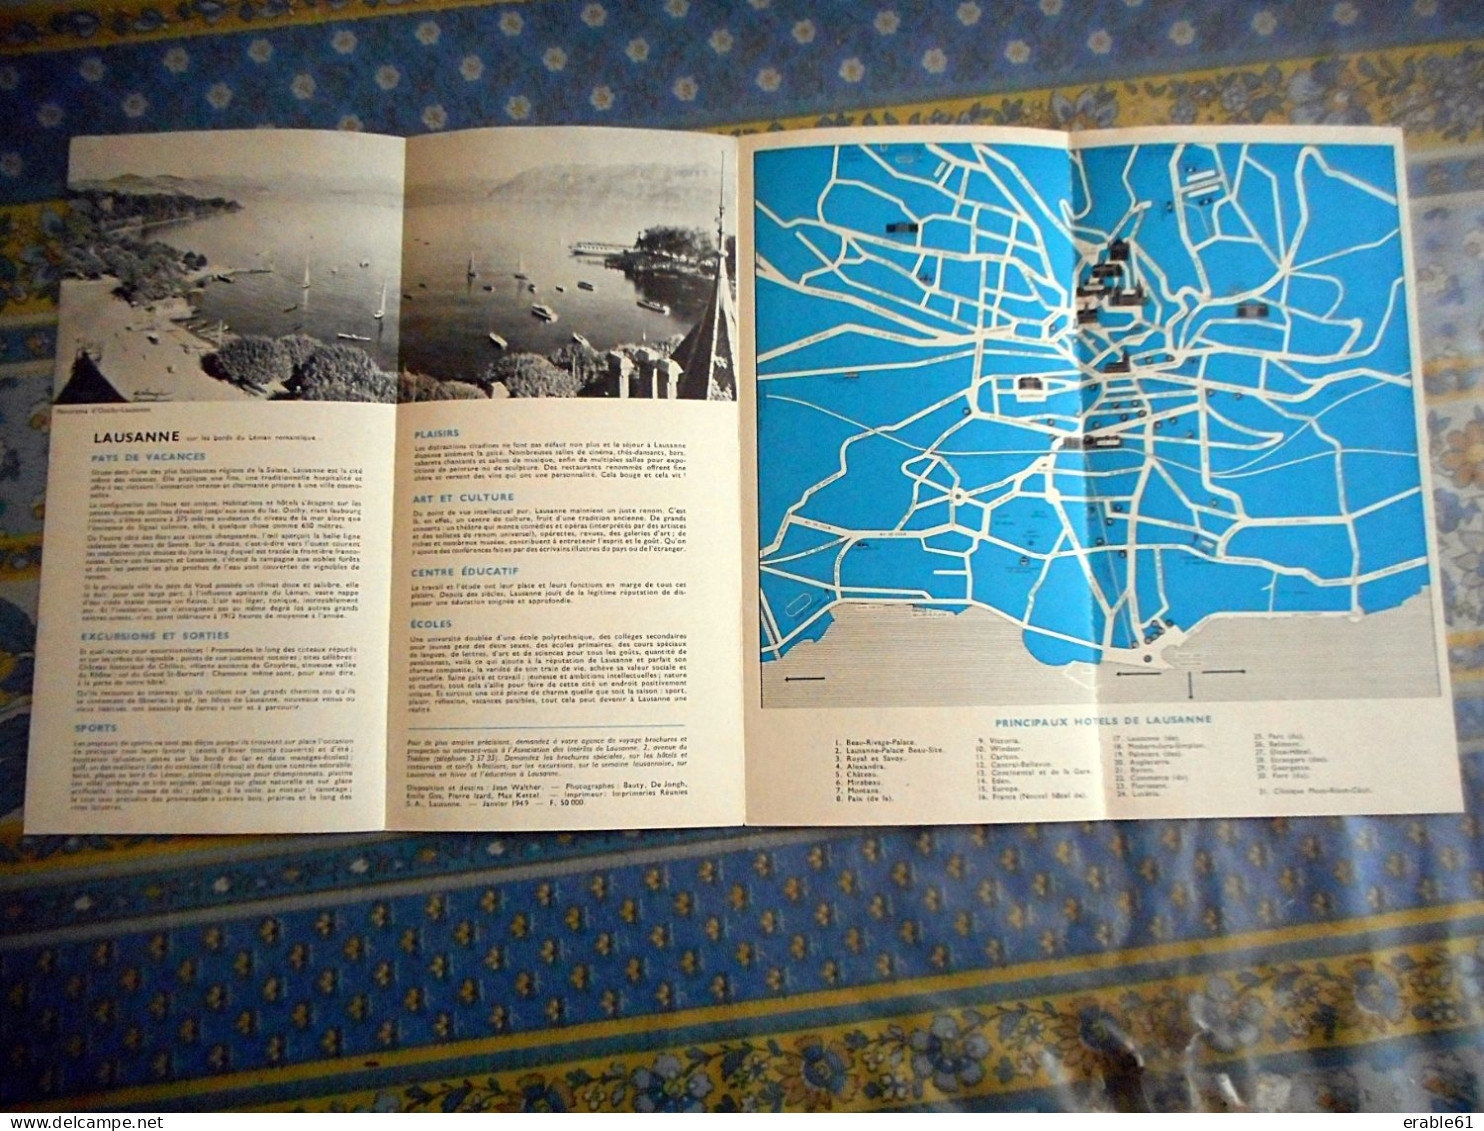 DEPLIANT TOURISTIQUE LAUSANNE SUISSE 1949 - Dépliants Touristiques